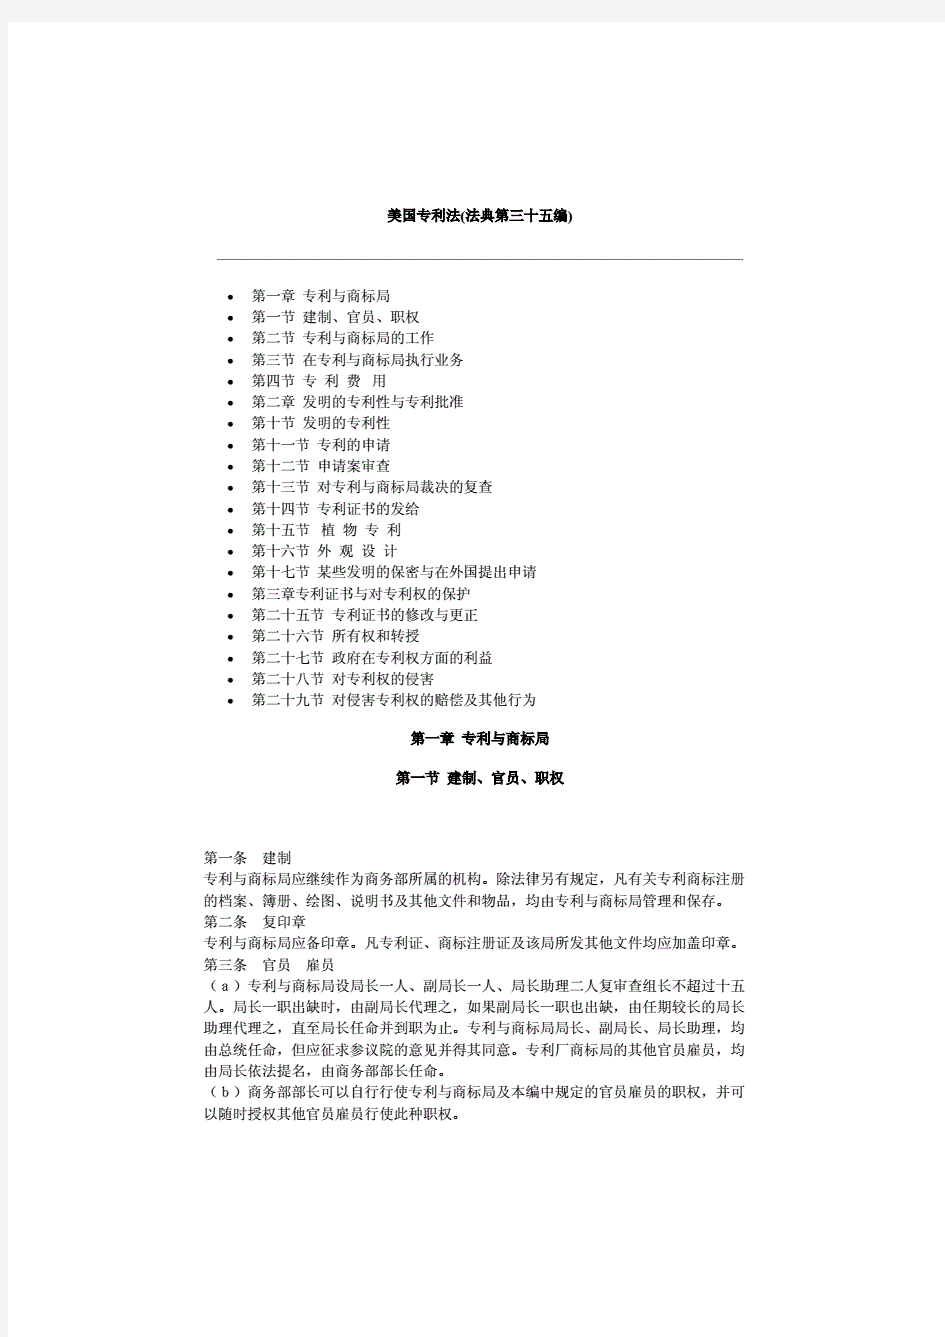 美国专利法(中文)